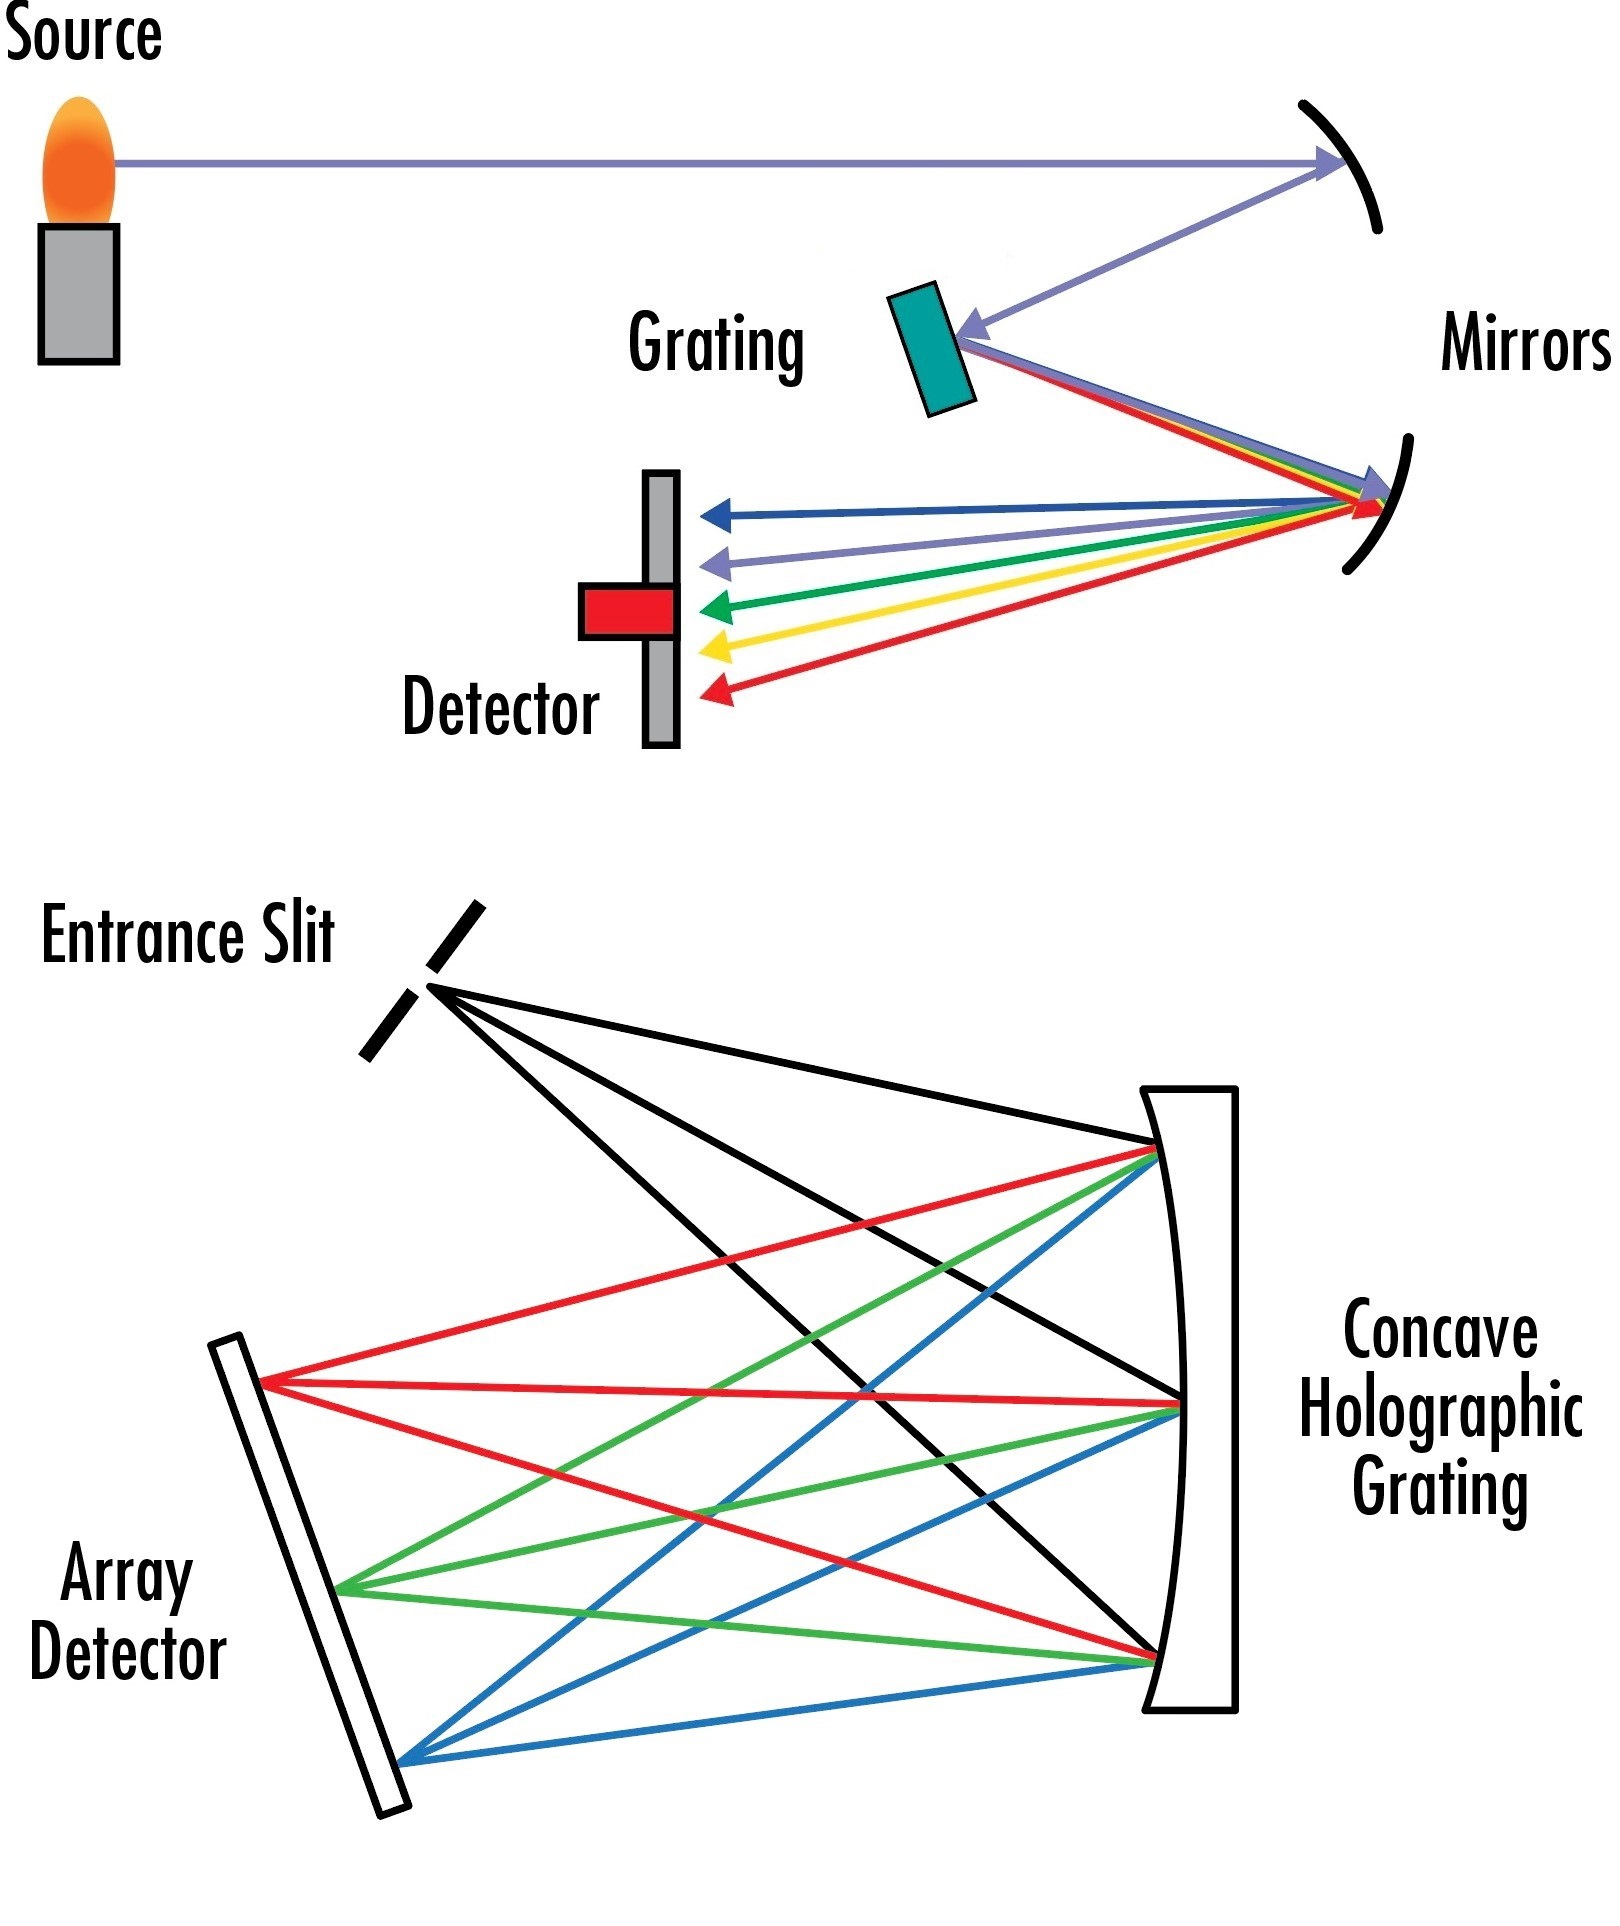 Les spectrographes à réseau plan (en haut) et les spectrographes à réseau concave (en bas) utilisent des réseaux stationnaires pour séparer les longueurs d'onde incidentes en différents pixels sur un réseau de détecteurs